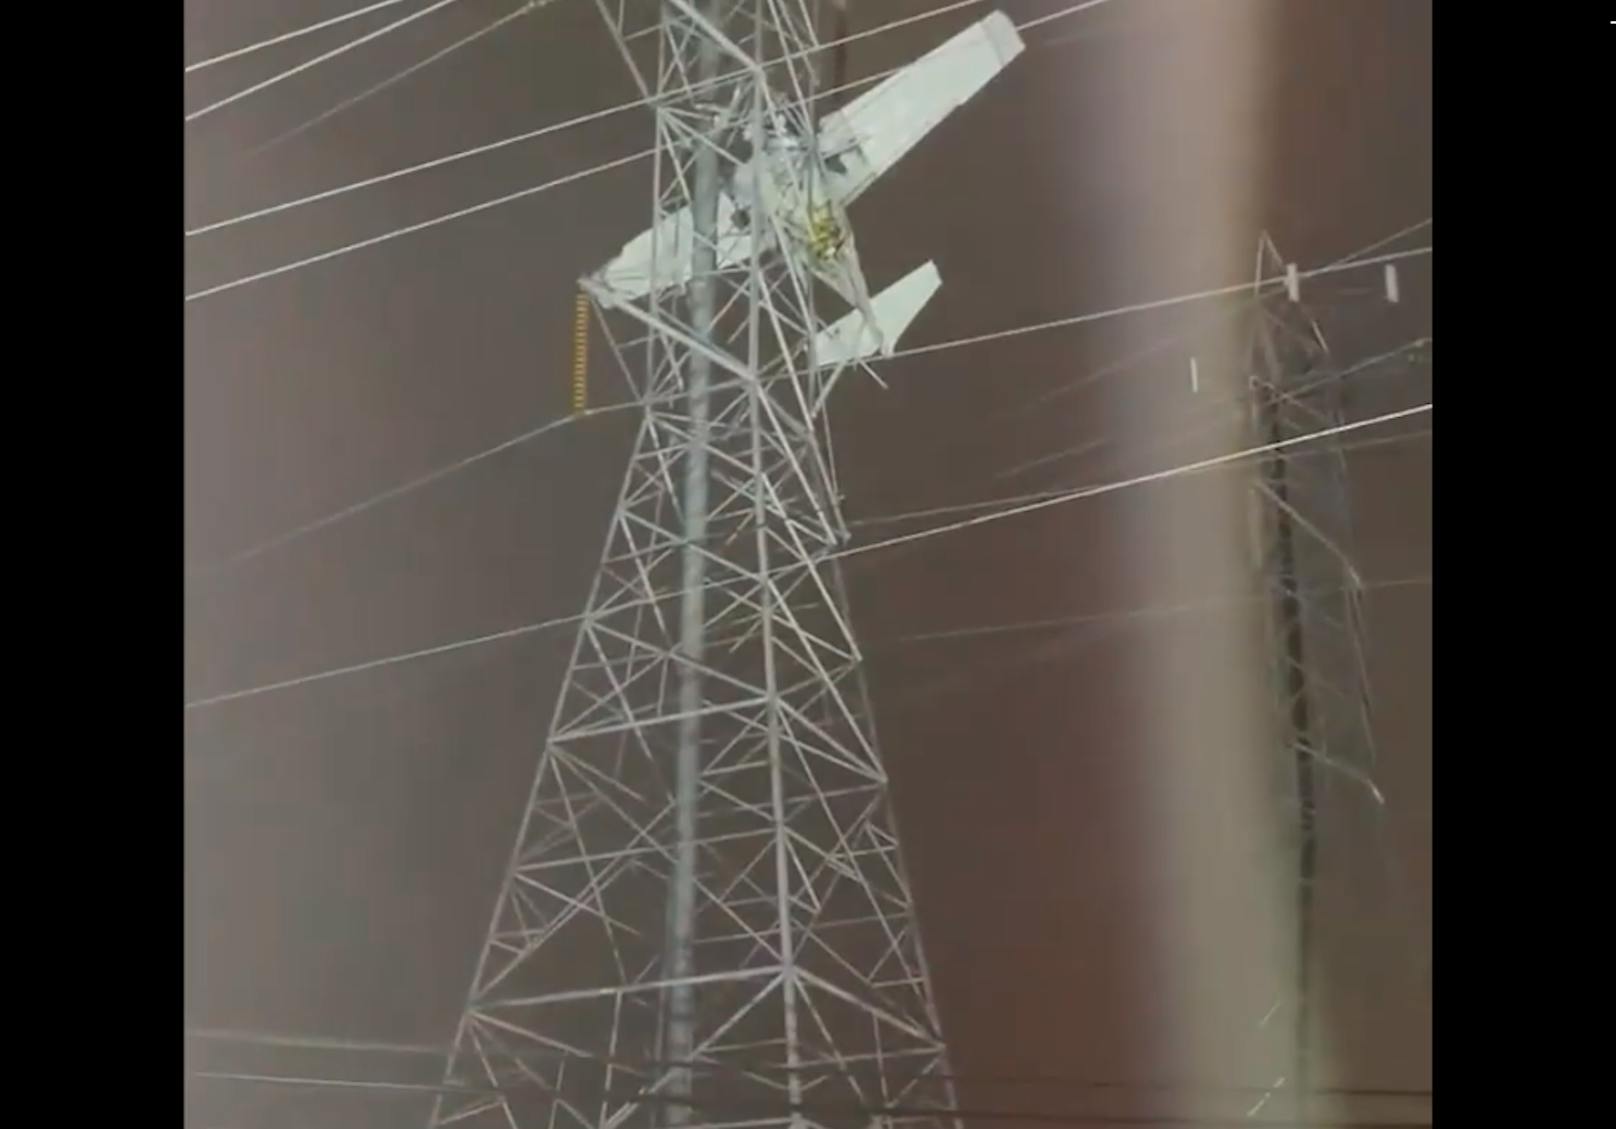 Videos zeigen, wie das Flugzeug in den Leitungen des Strommasts festhängt und die Rettungsaktion startet.